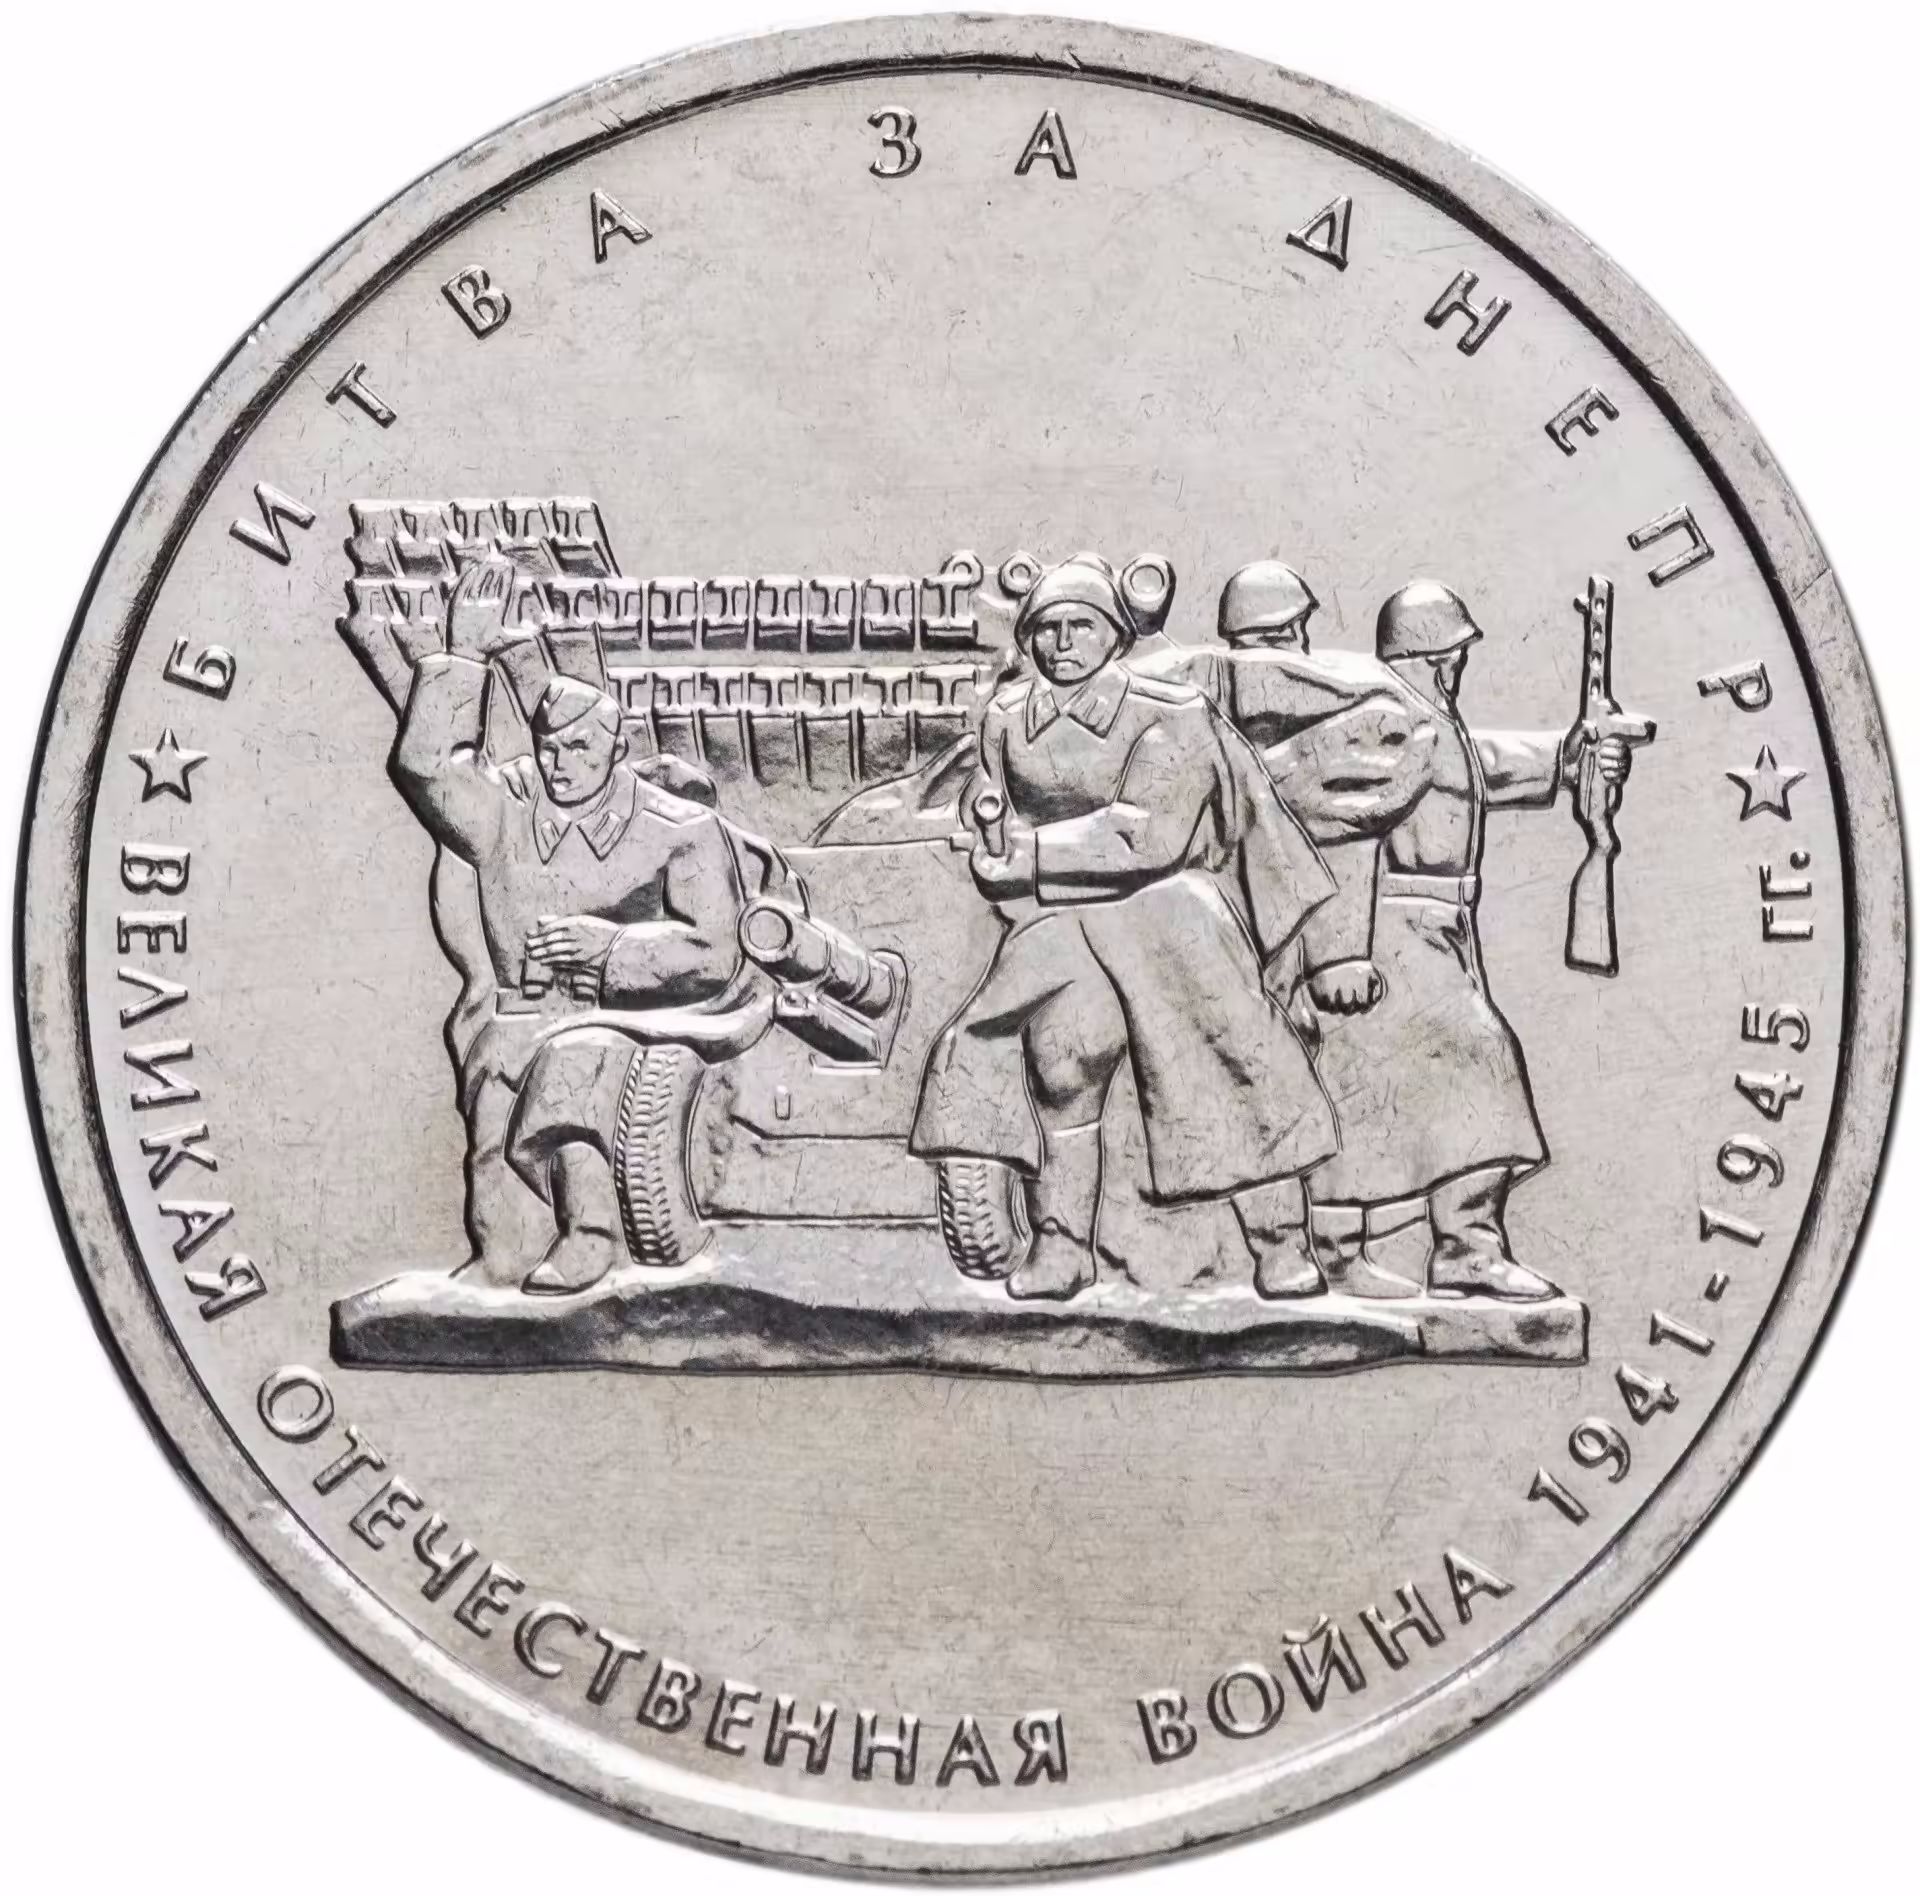 Памятная монета москва. 5 Рублей 2014 битва за Днепр. Монета 2014 год 5 рублей битва за Днепр. Юбилейная монета битва за Днепр.